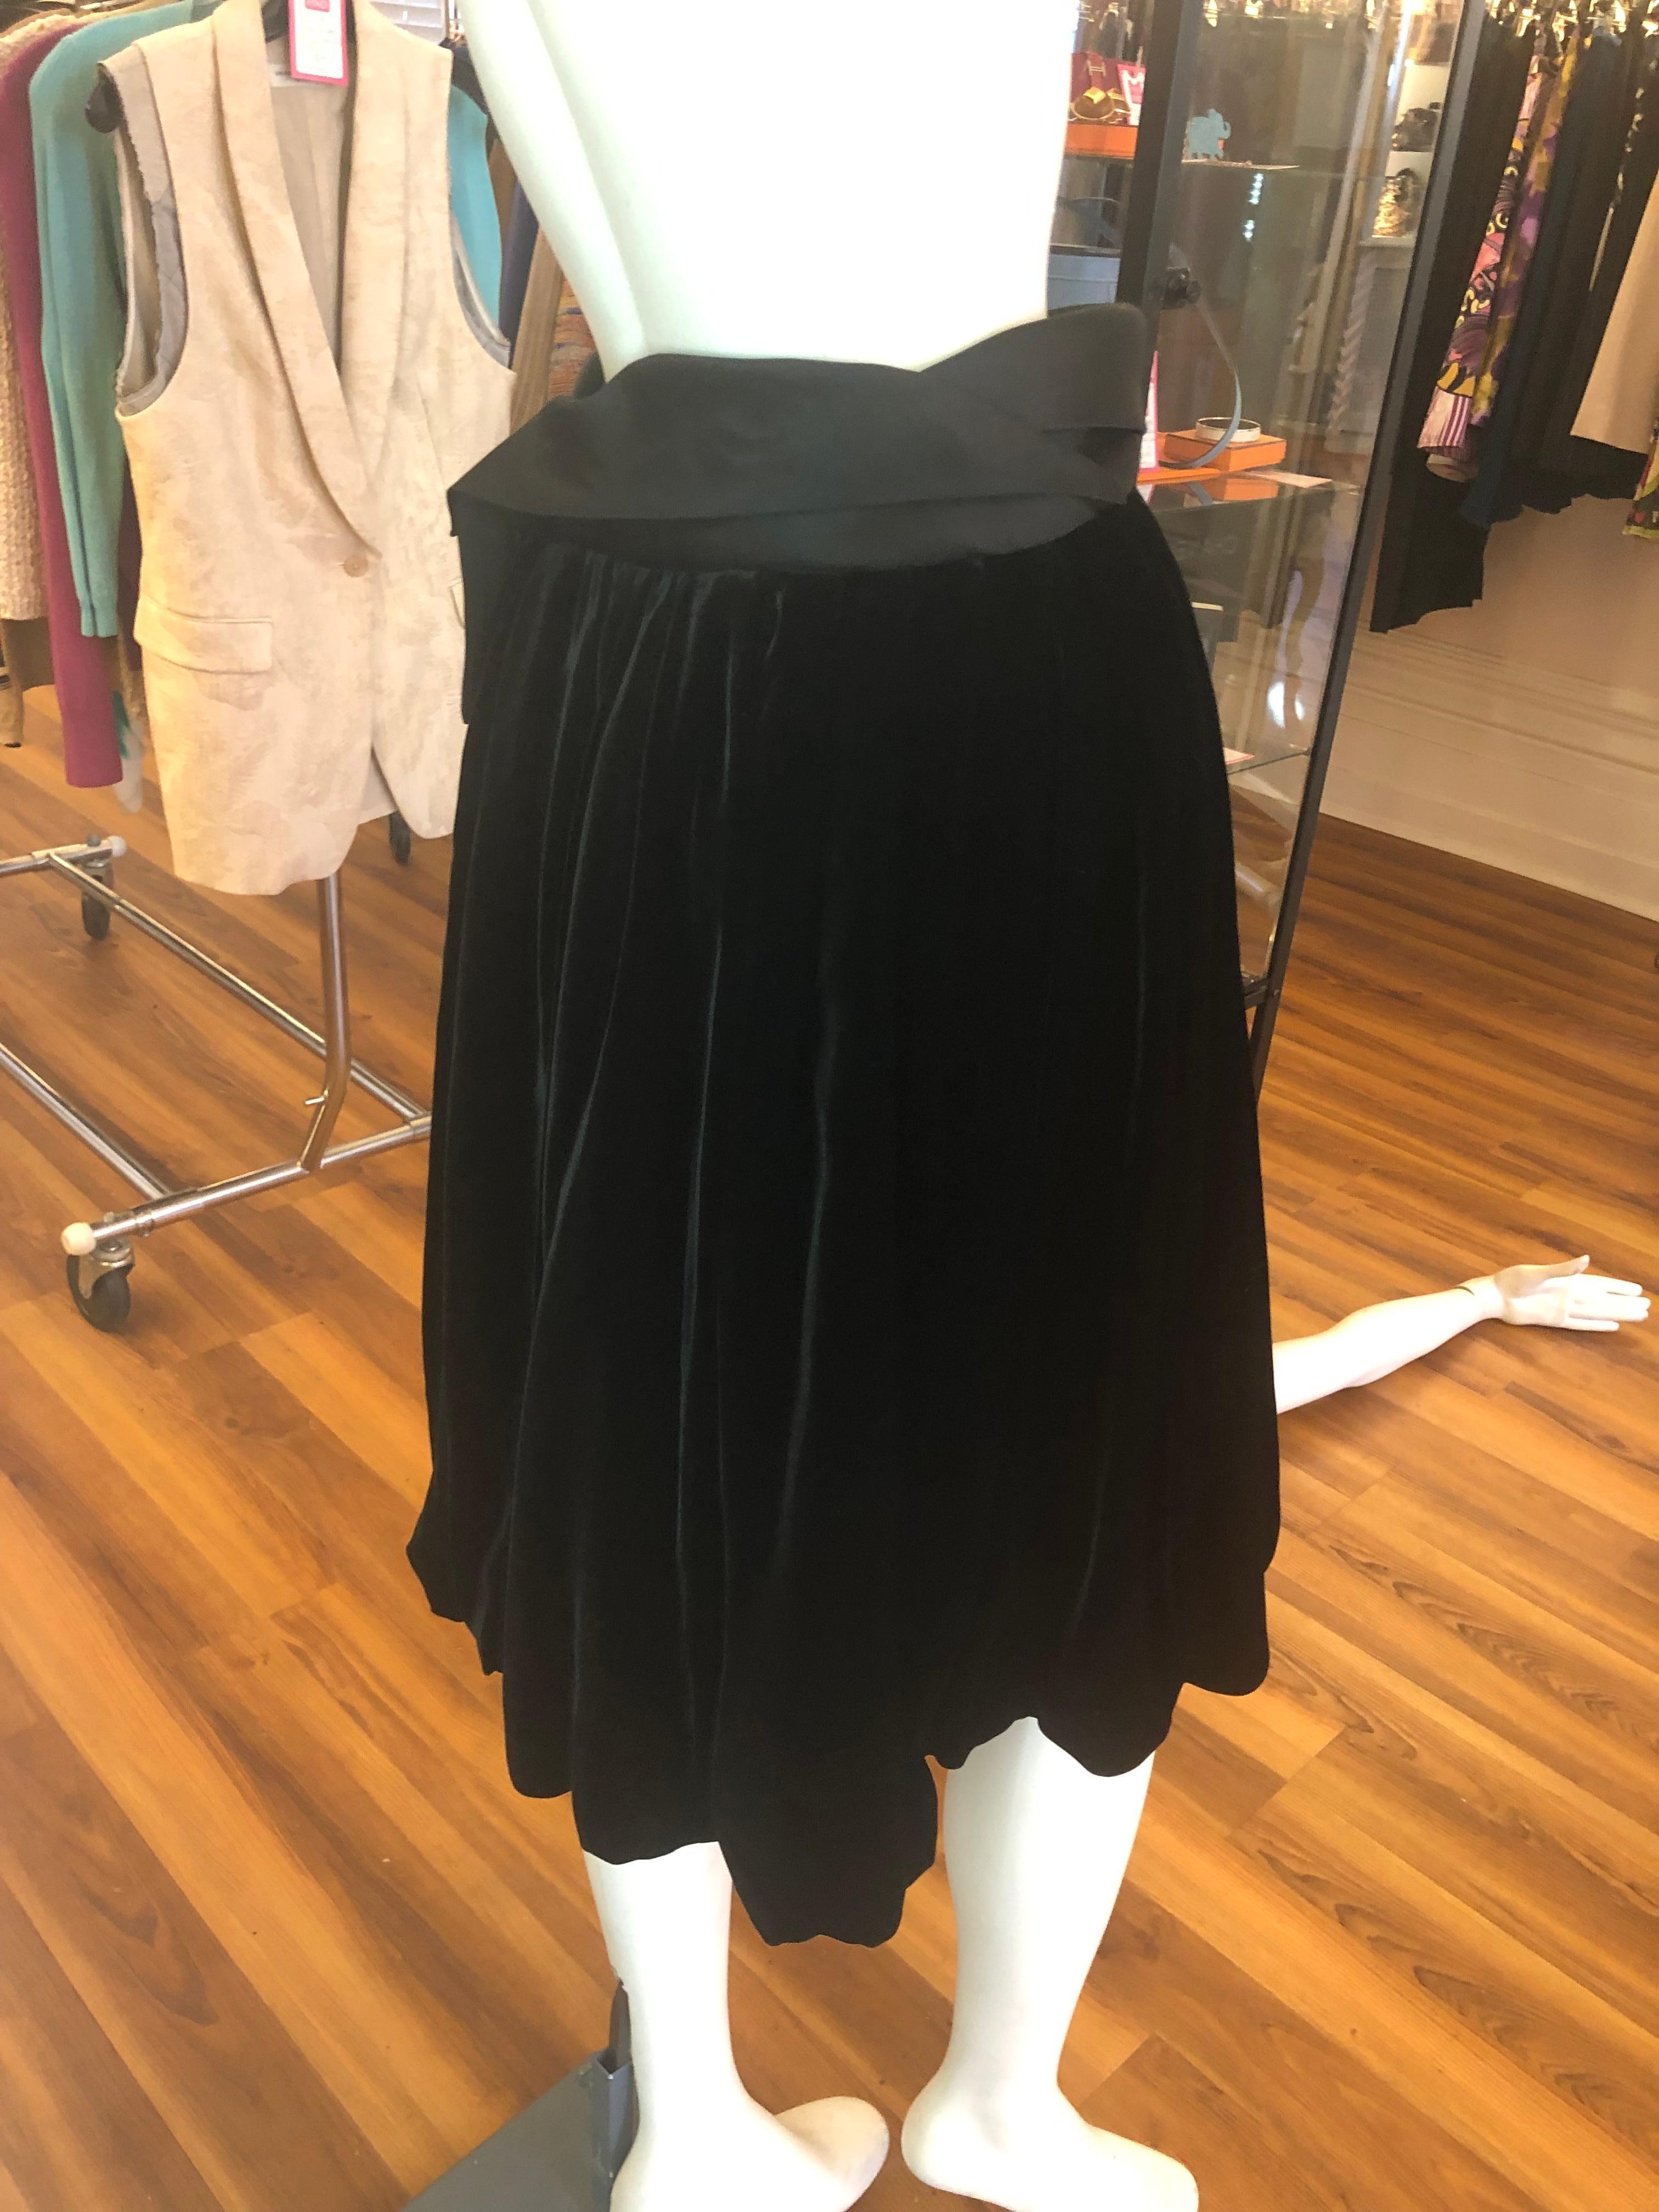 Il s'agit d'une jolie jupe bulle en velours noir conçue au milieu des années 2000 par John Galliano.
Le velours est complété par une bande de satin noir à la taille.